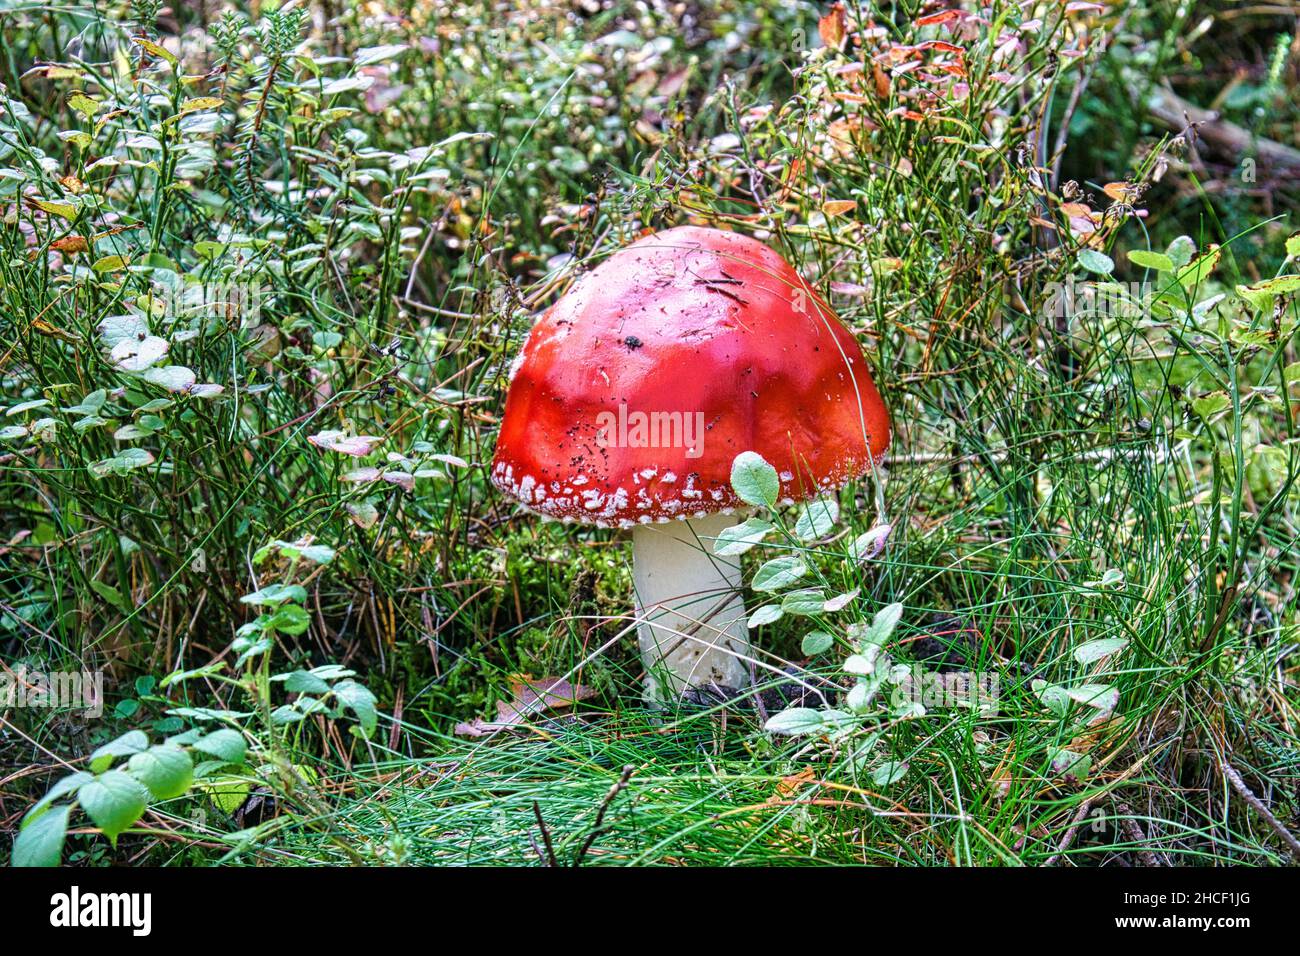 Tabouret dans une forêt à feuilles caduques sur le Darss.Les champignons rouges toxiques sont souvent vus en groupes Banque D'Images